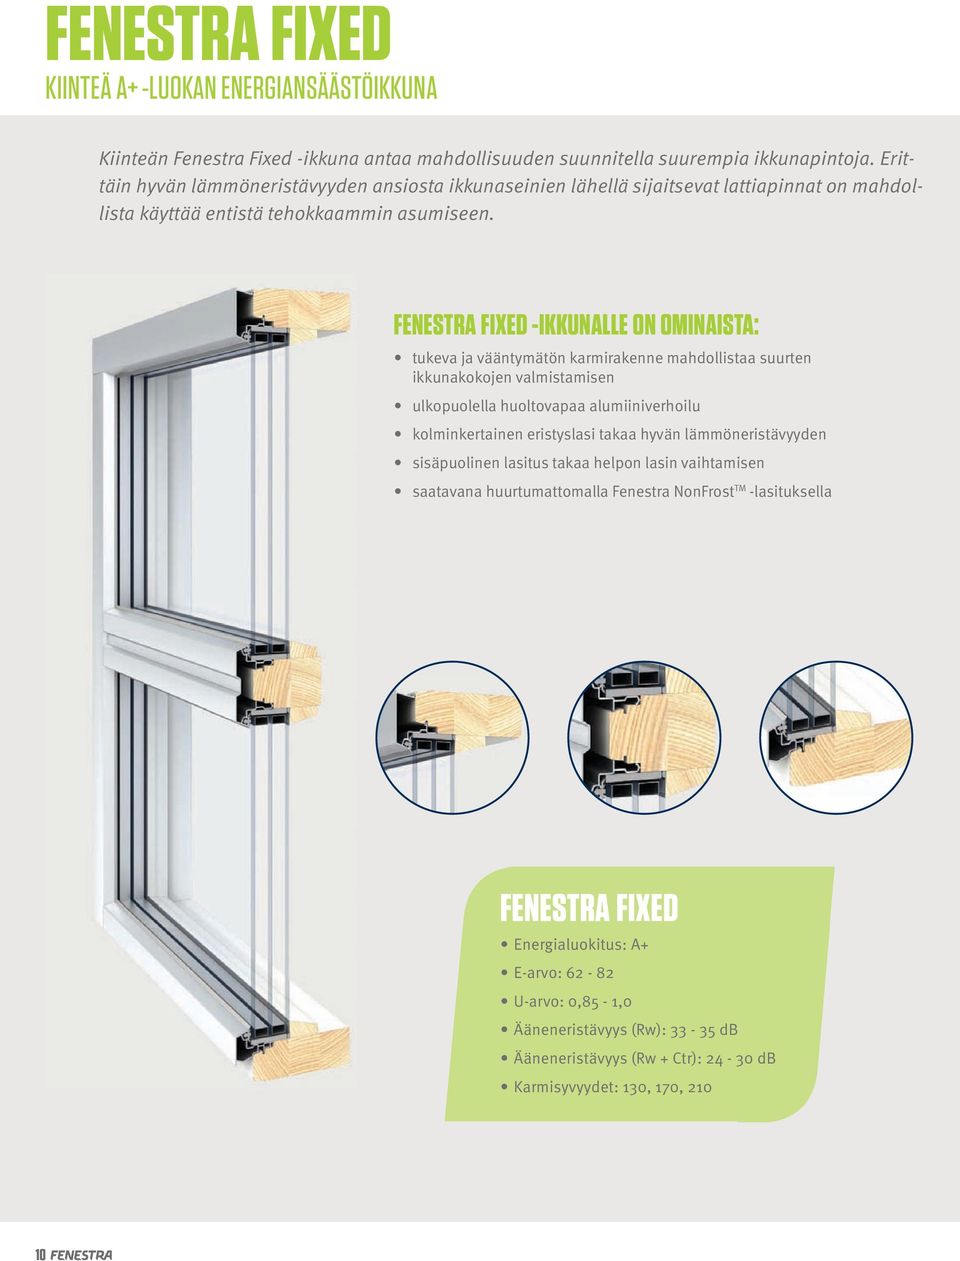 FeNesTrA FIxeD -IKKUNAlle on ominaista: tukeva ja vääntymätön karmirakenne mahdollistaa suurten ikkunakokojen valmistamisen ulkopuolella huoltovapaa alumiiniverhoilu kolminkertainen eristyslasi